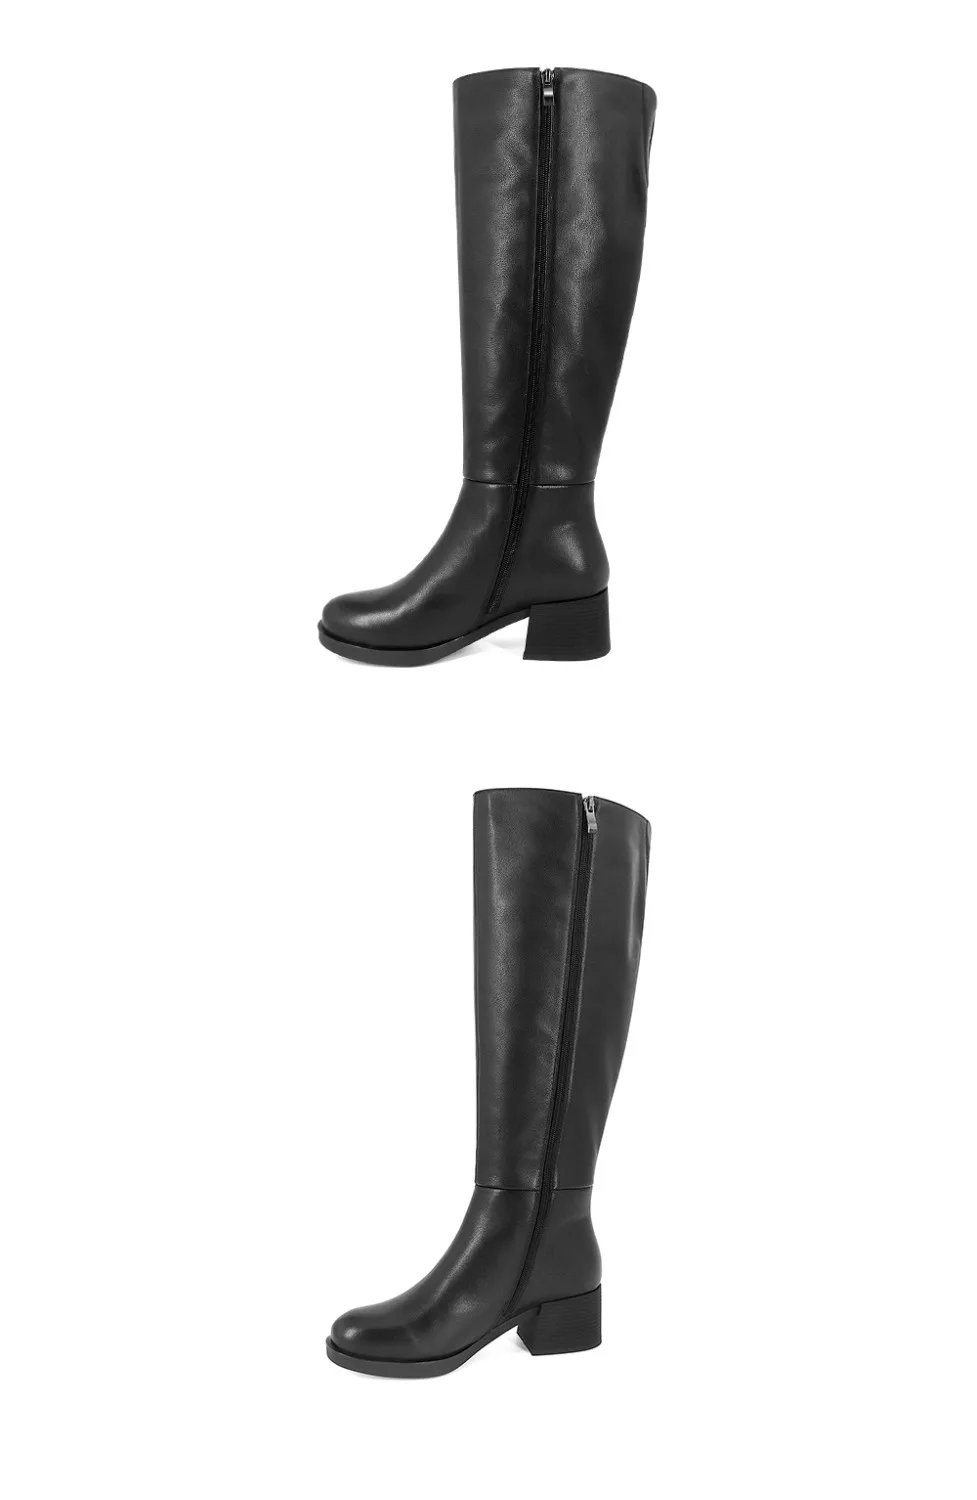 SOPHITINA/ Новые сапоги до колен; Женские обуви с элегантным круглым носком и квадратным средным каблуком; Зимние женские сапоги из высококачественной натуральной кожи и супер теплой ворсина; BA3